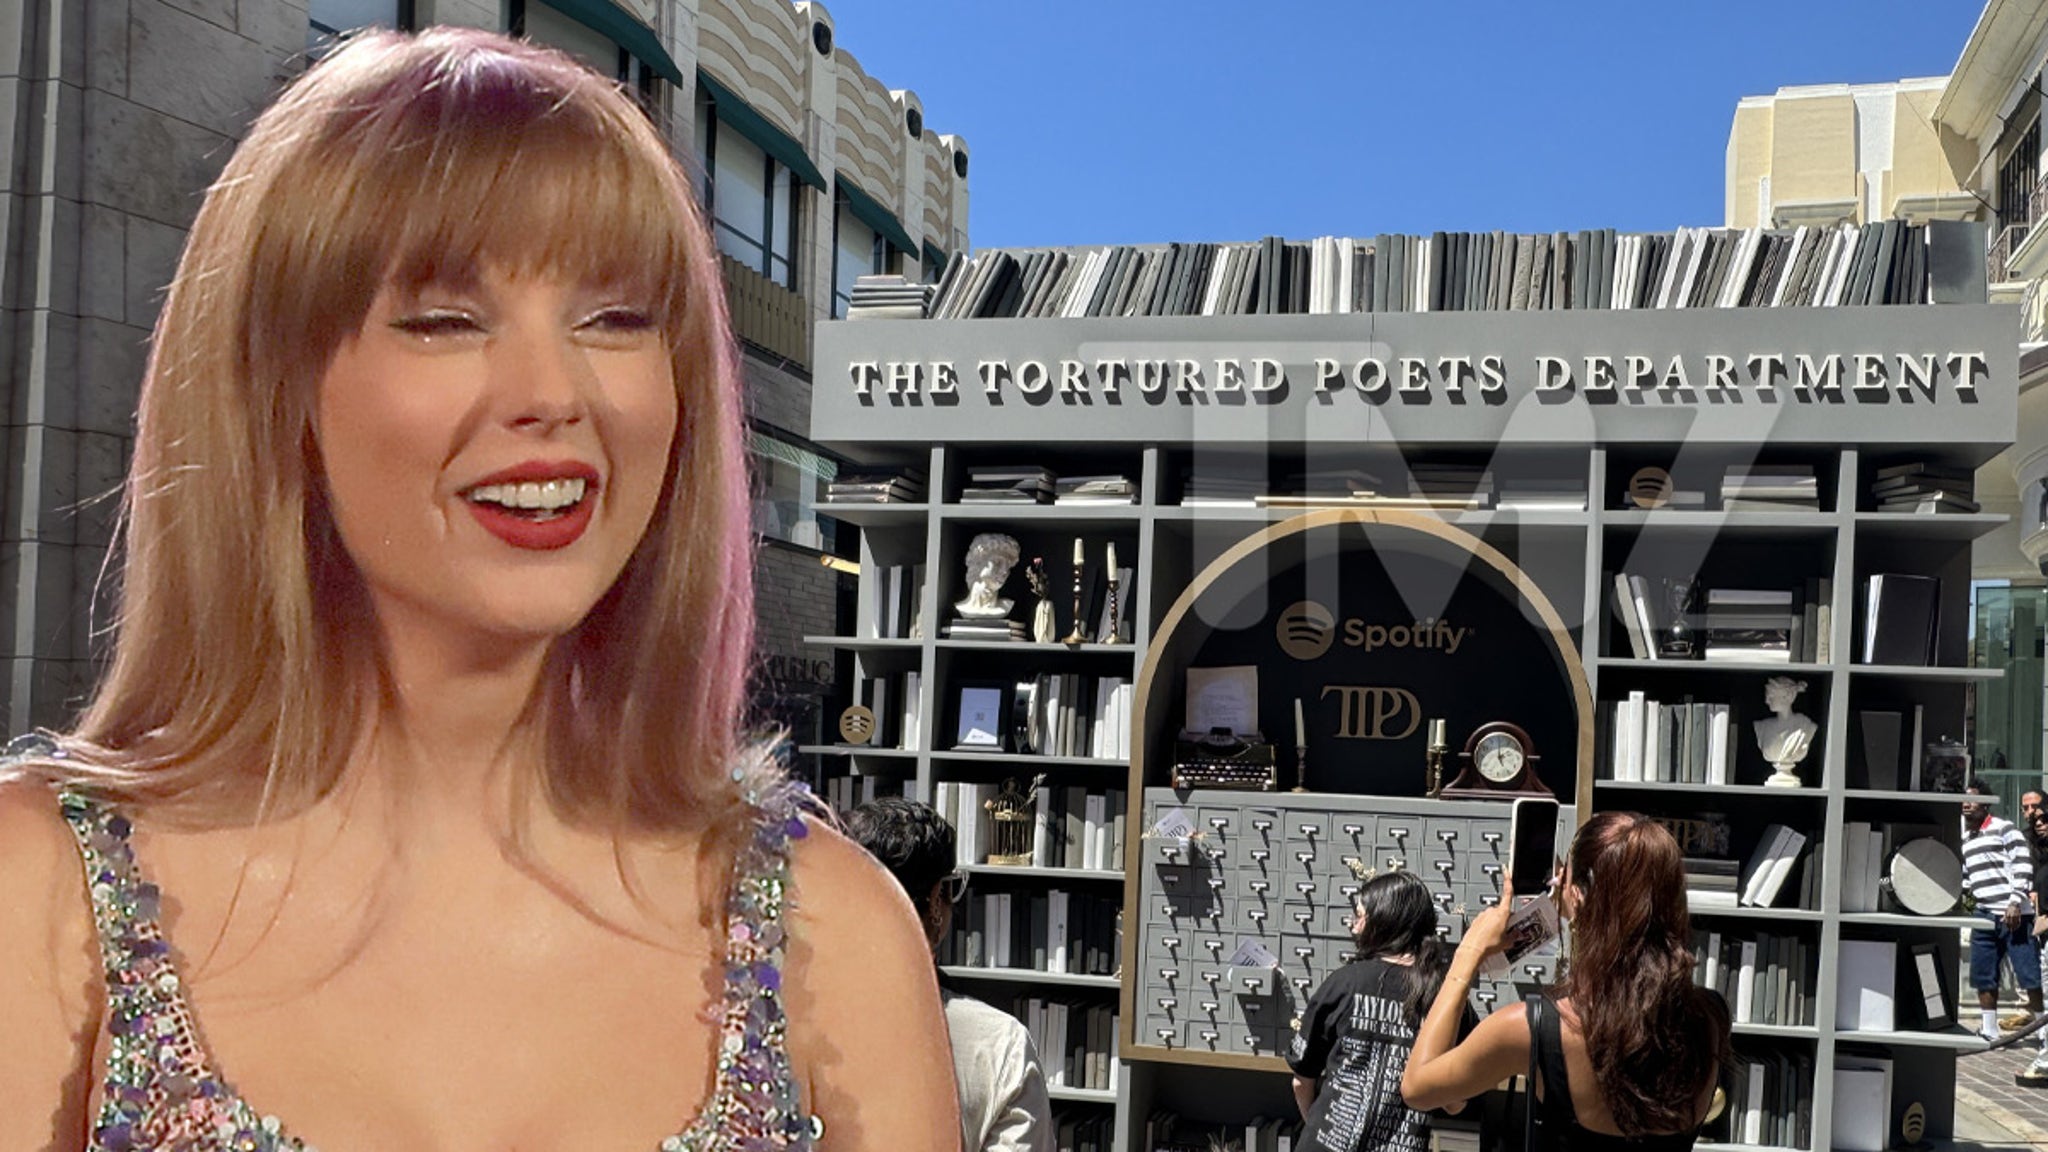 Les fans de Taylor Swift forment de longues files d'attente pour le pop-up “Poets” avant le nouvel album